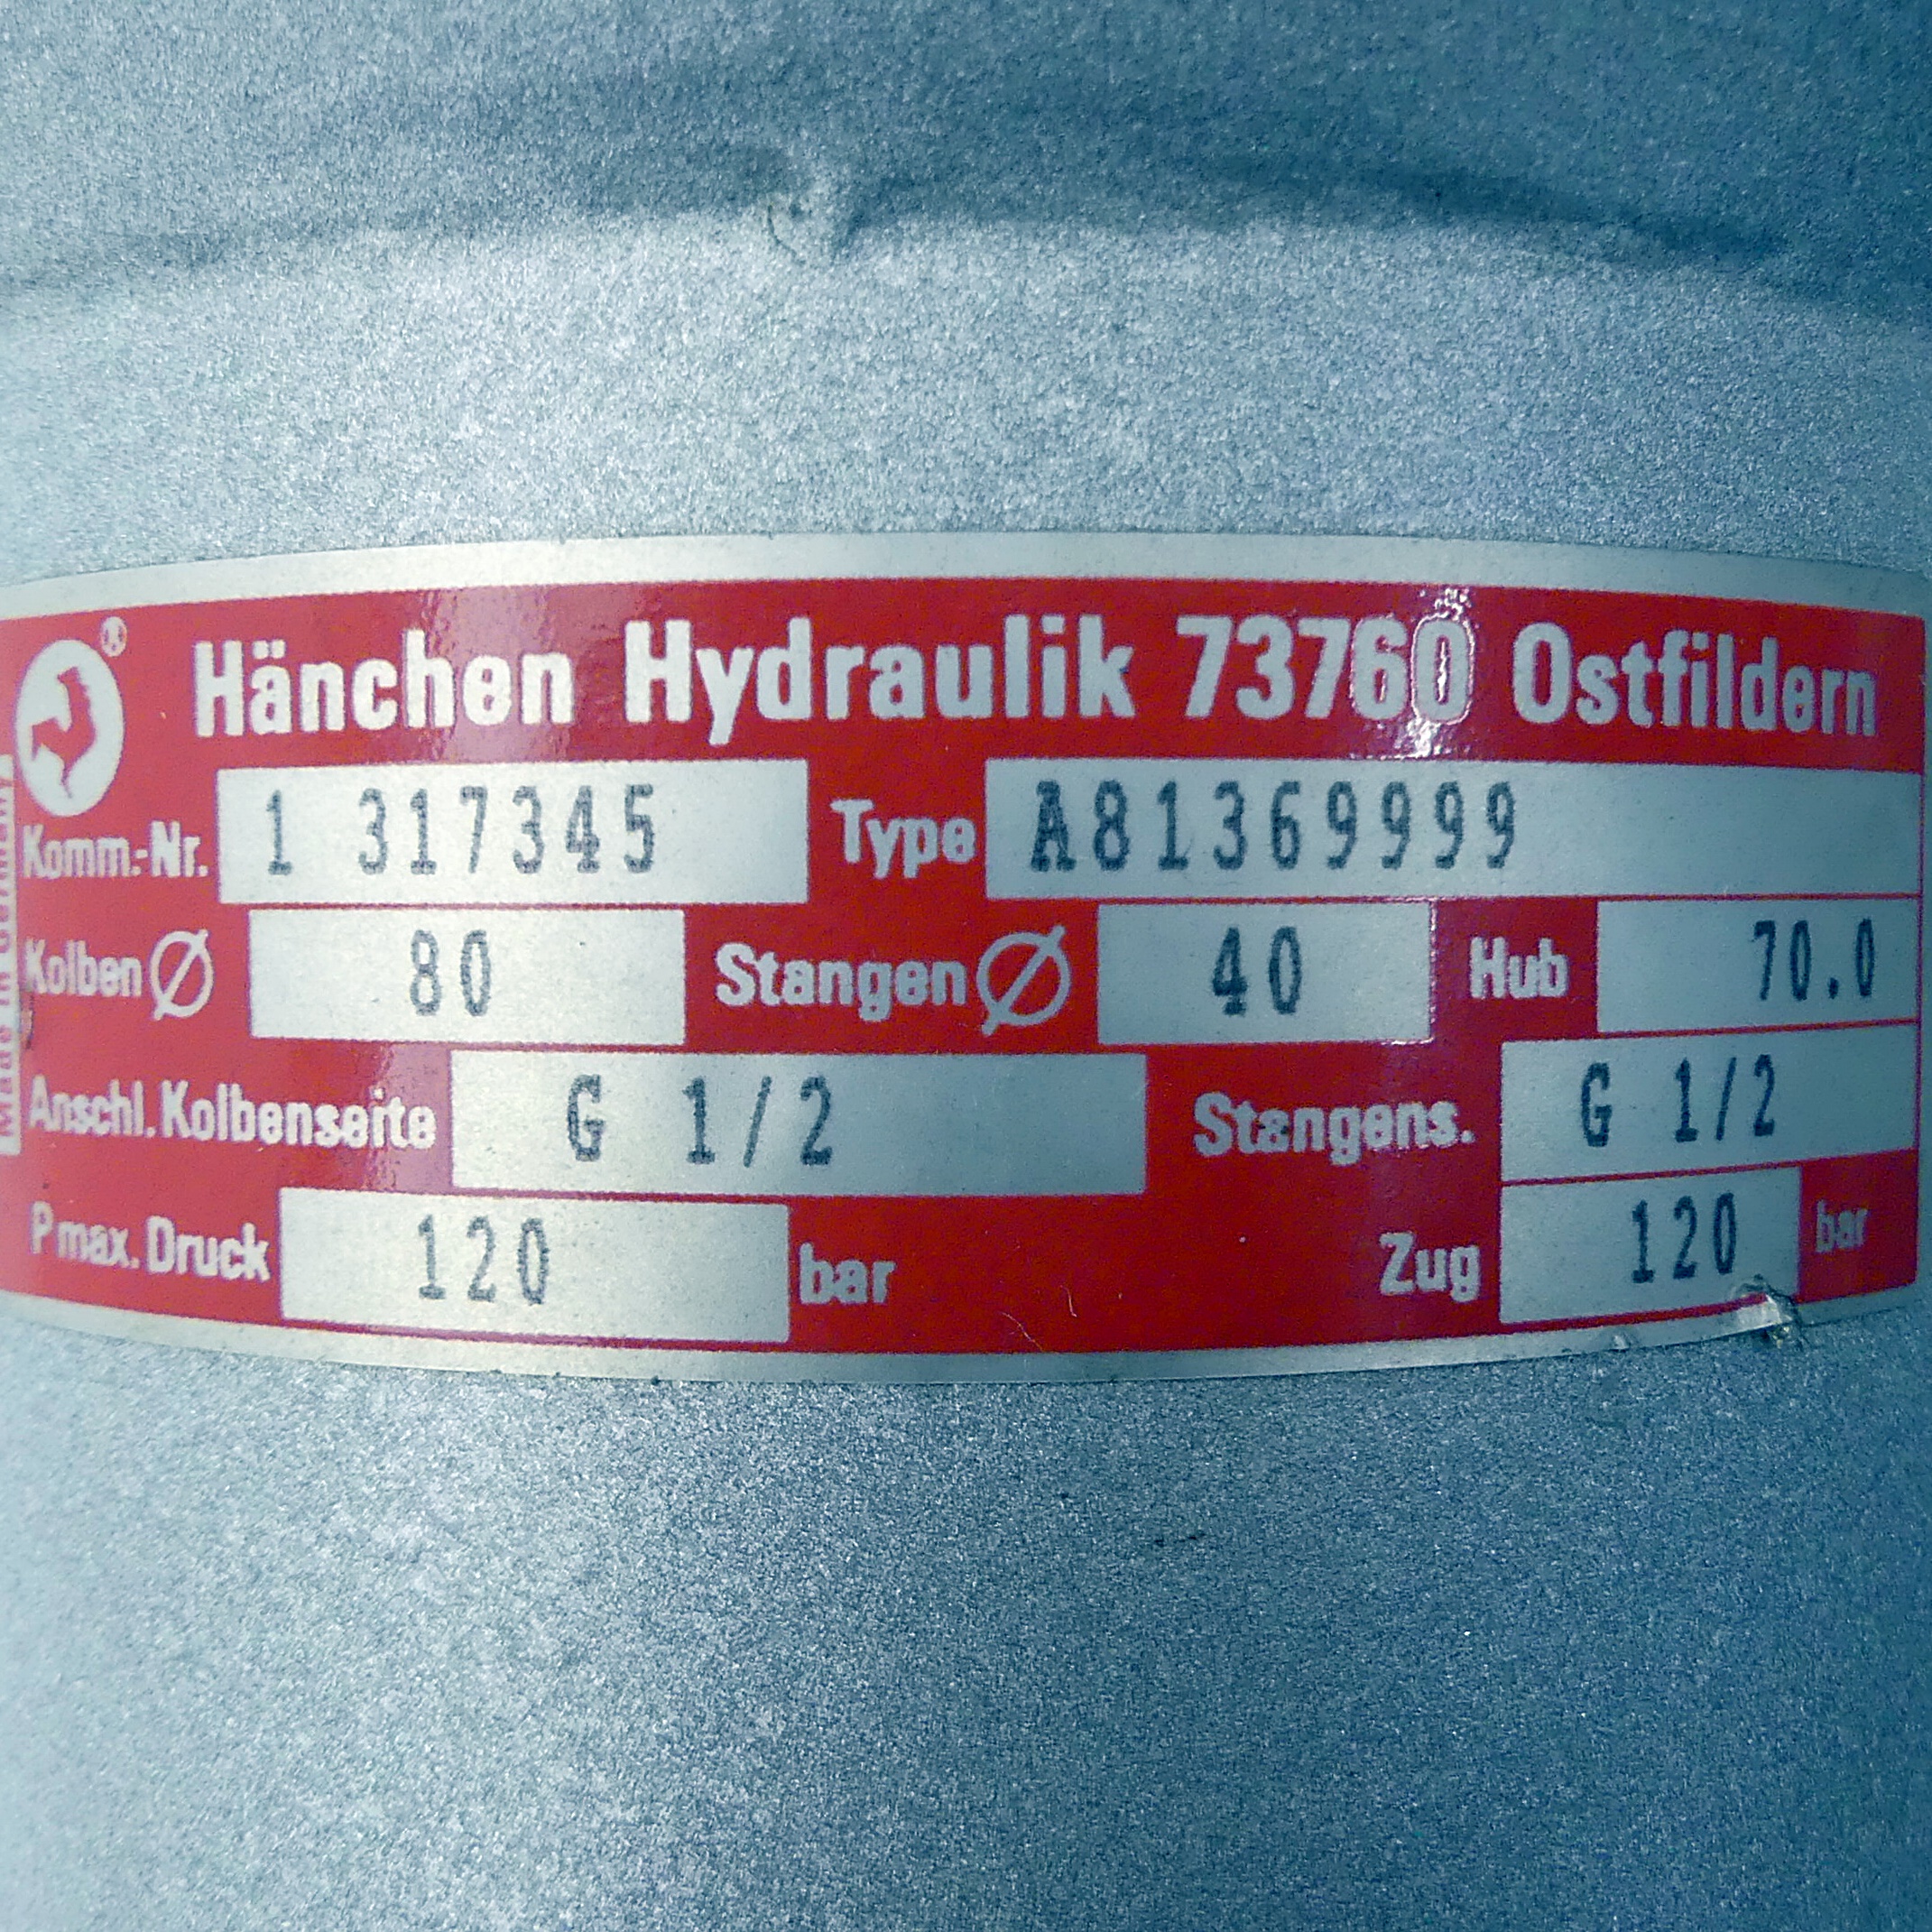 Hydraulic cylinder A81369999 